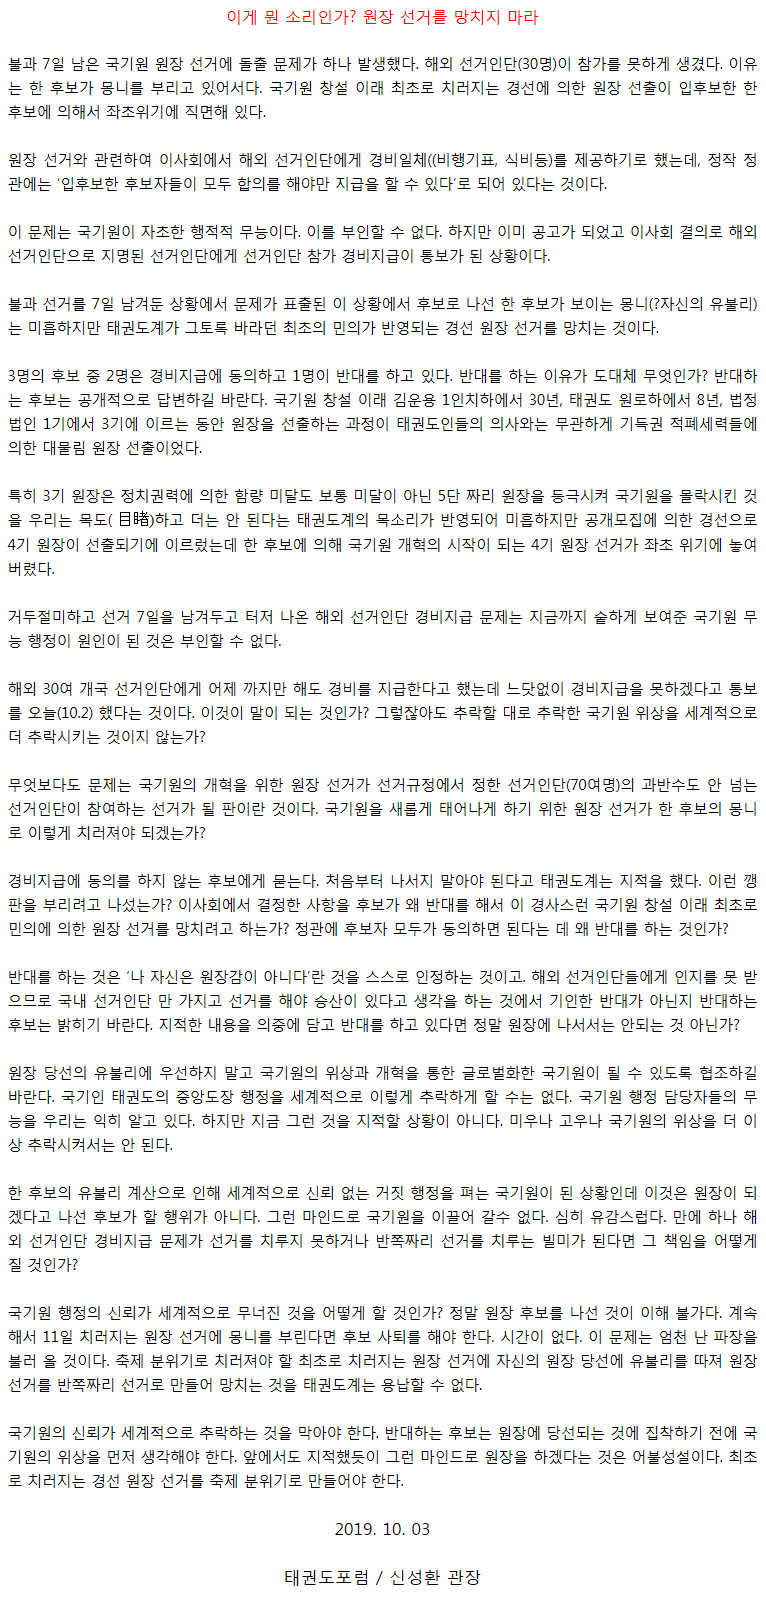 20191003_이게뭔소리인가김현성후보는원장선거를망치지마라1.gif